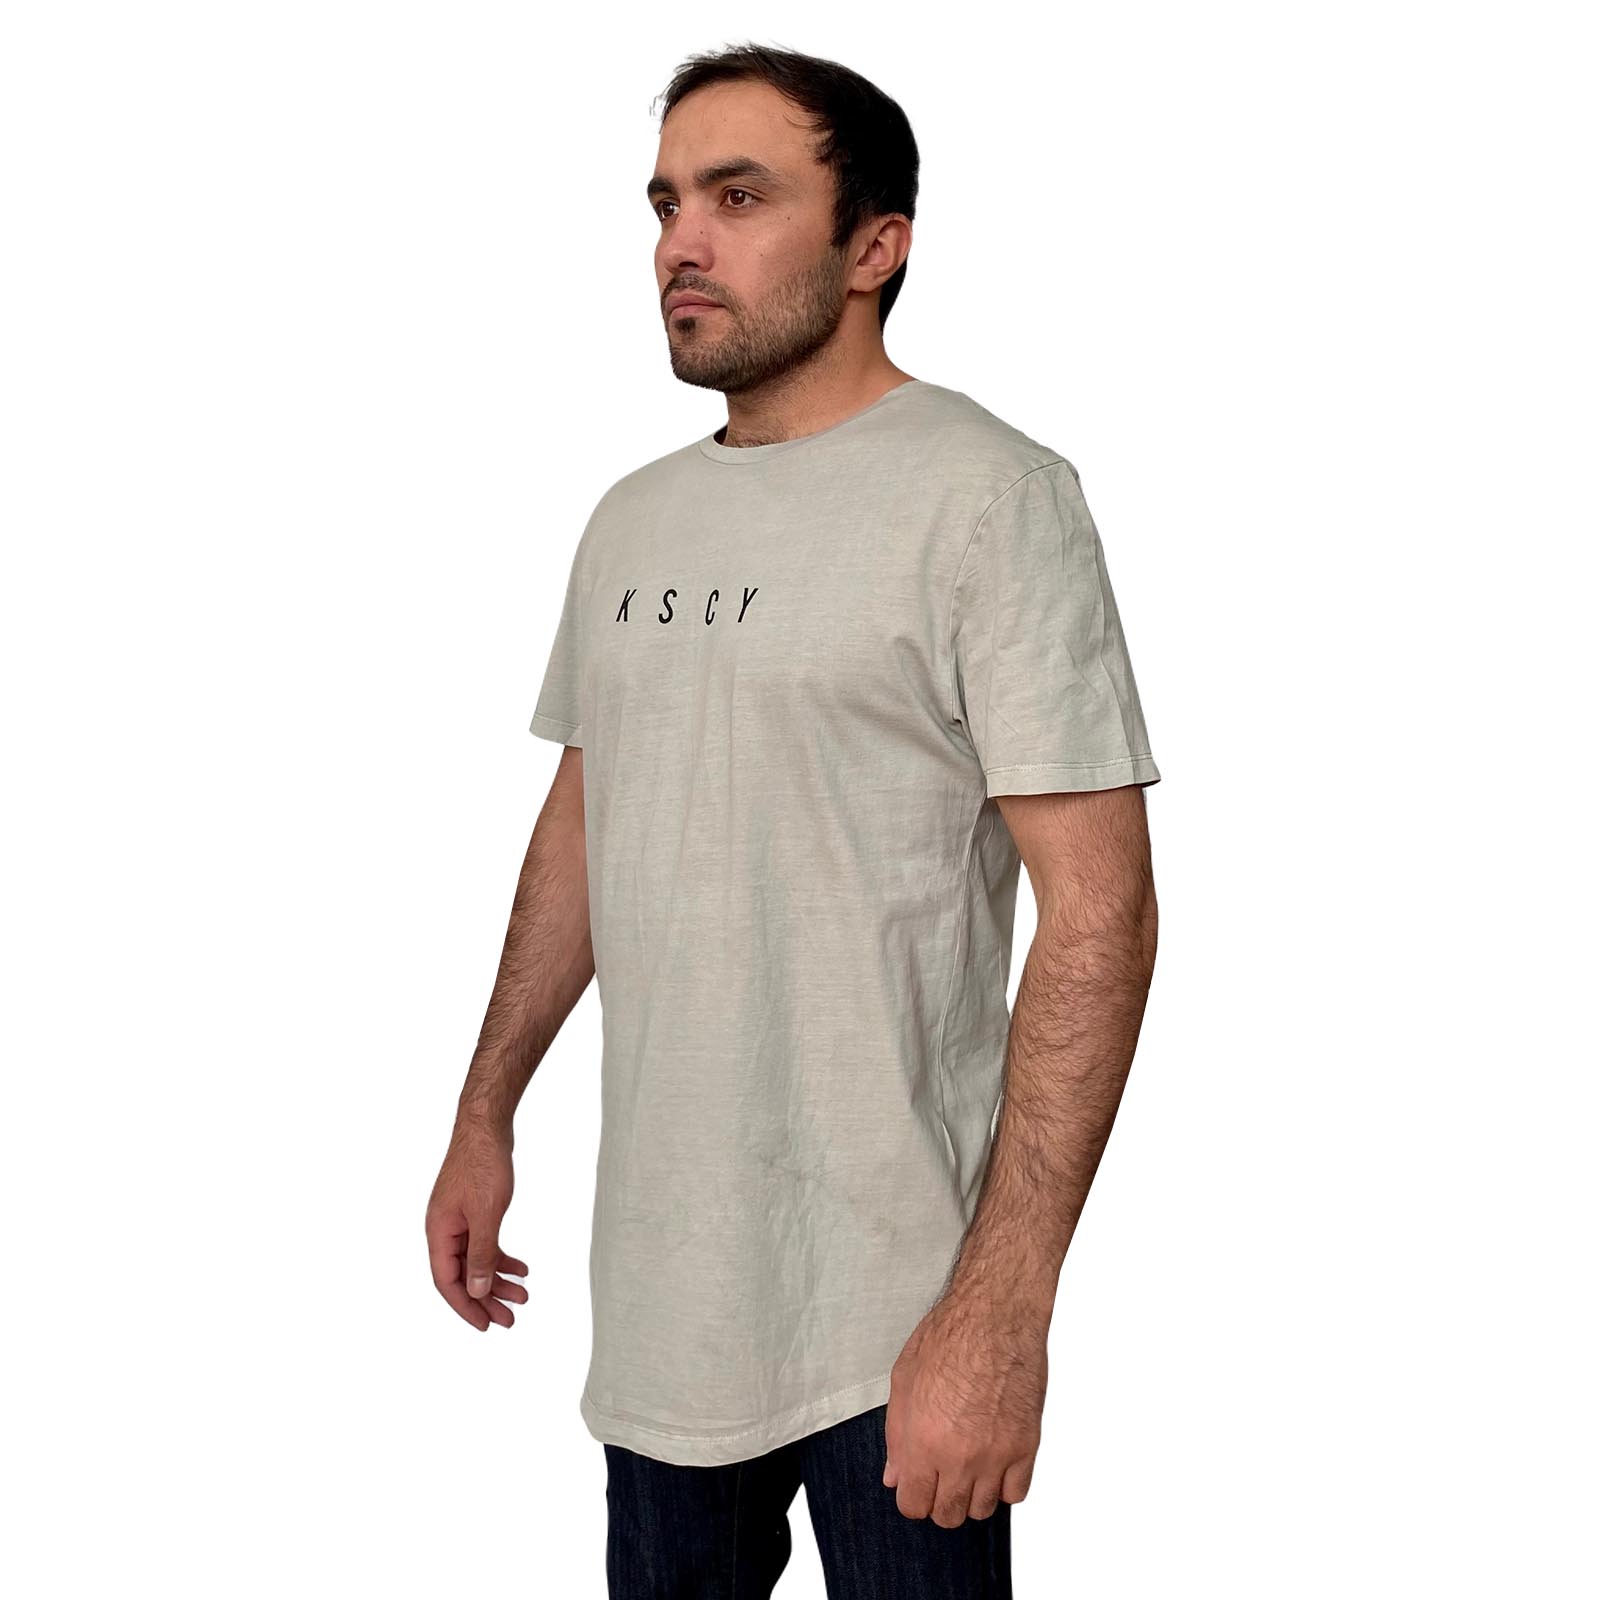 Заказать в интернете мужскую футболку недорого